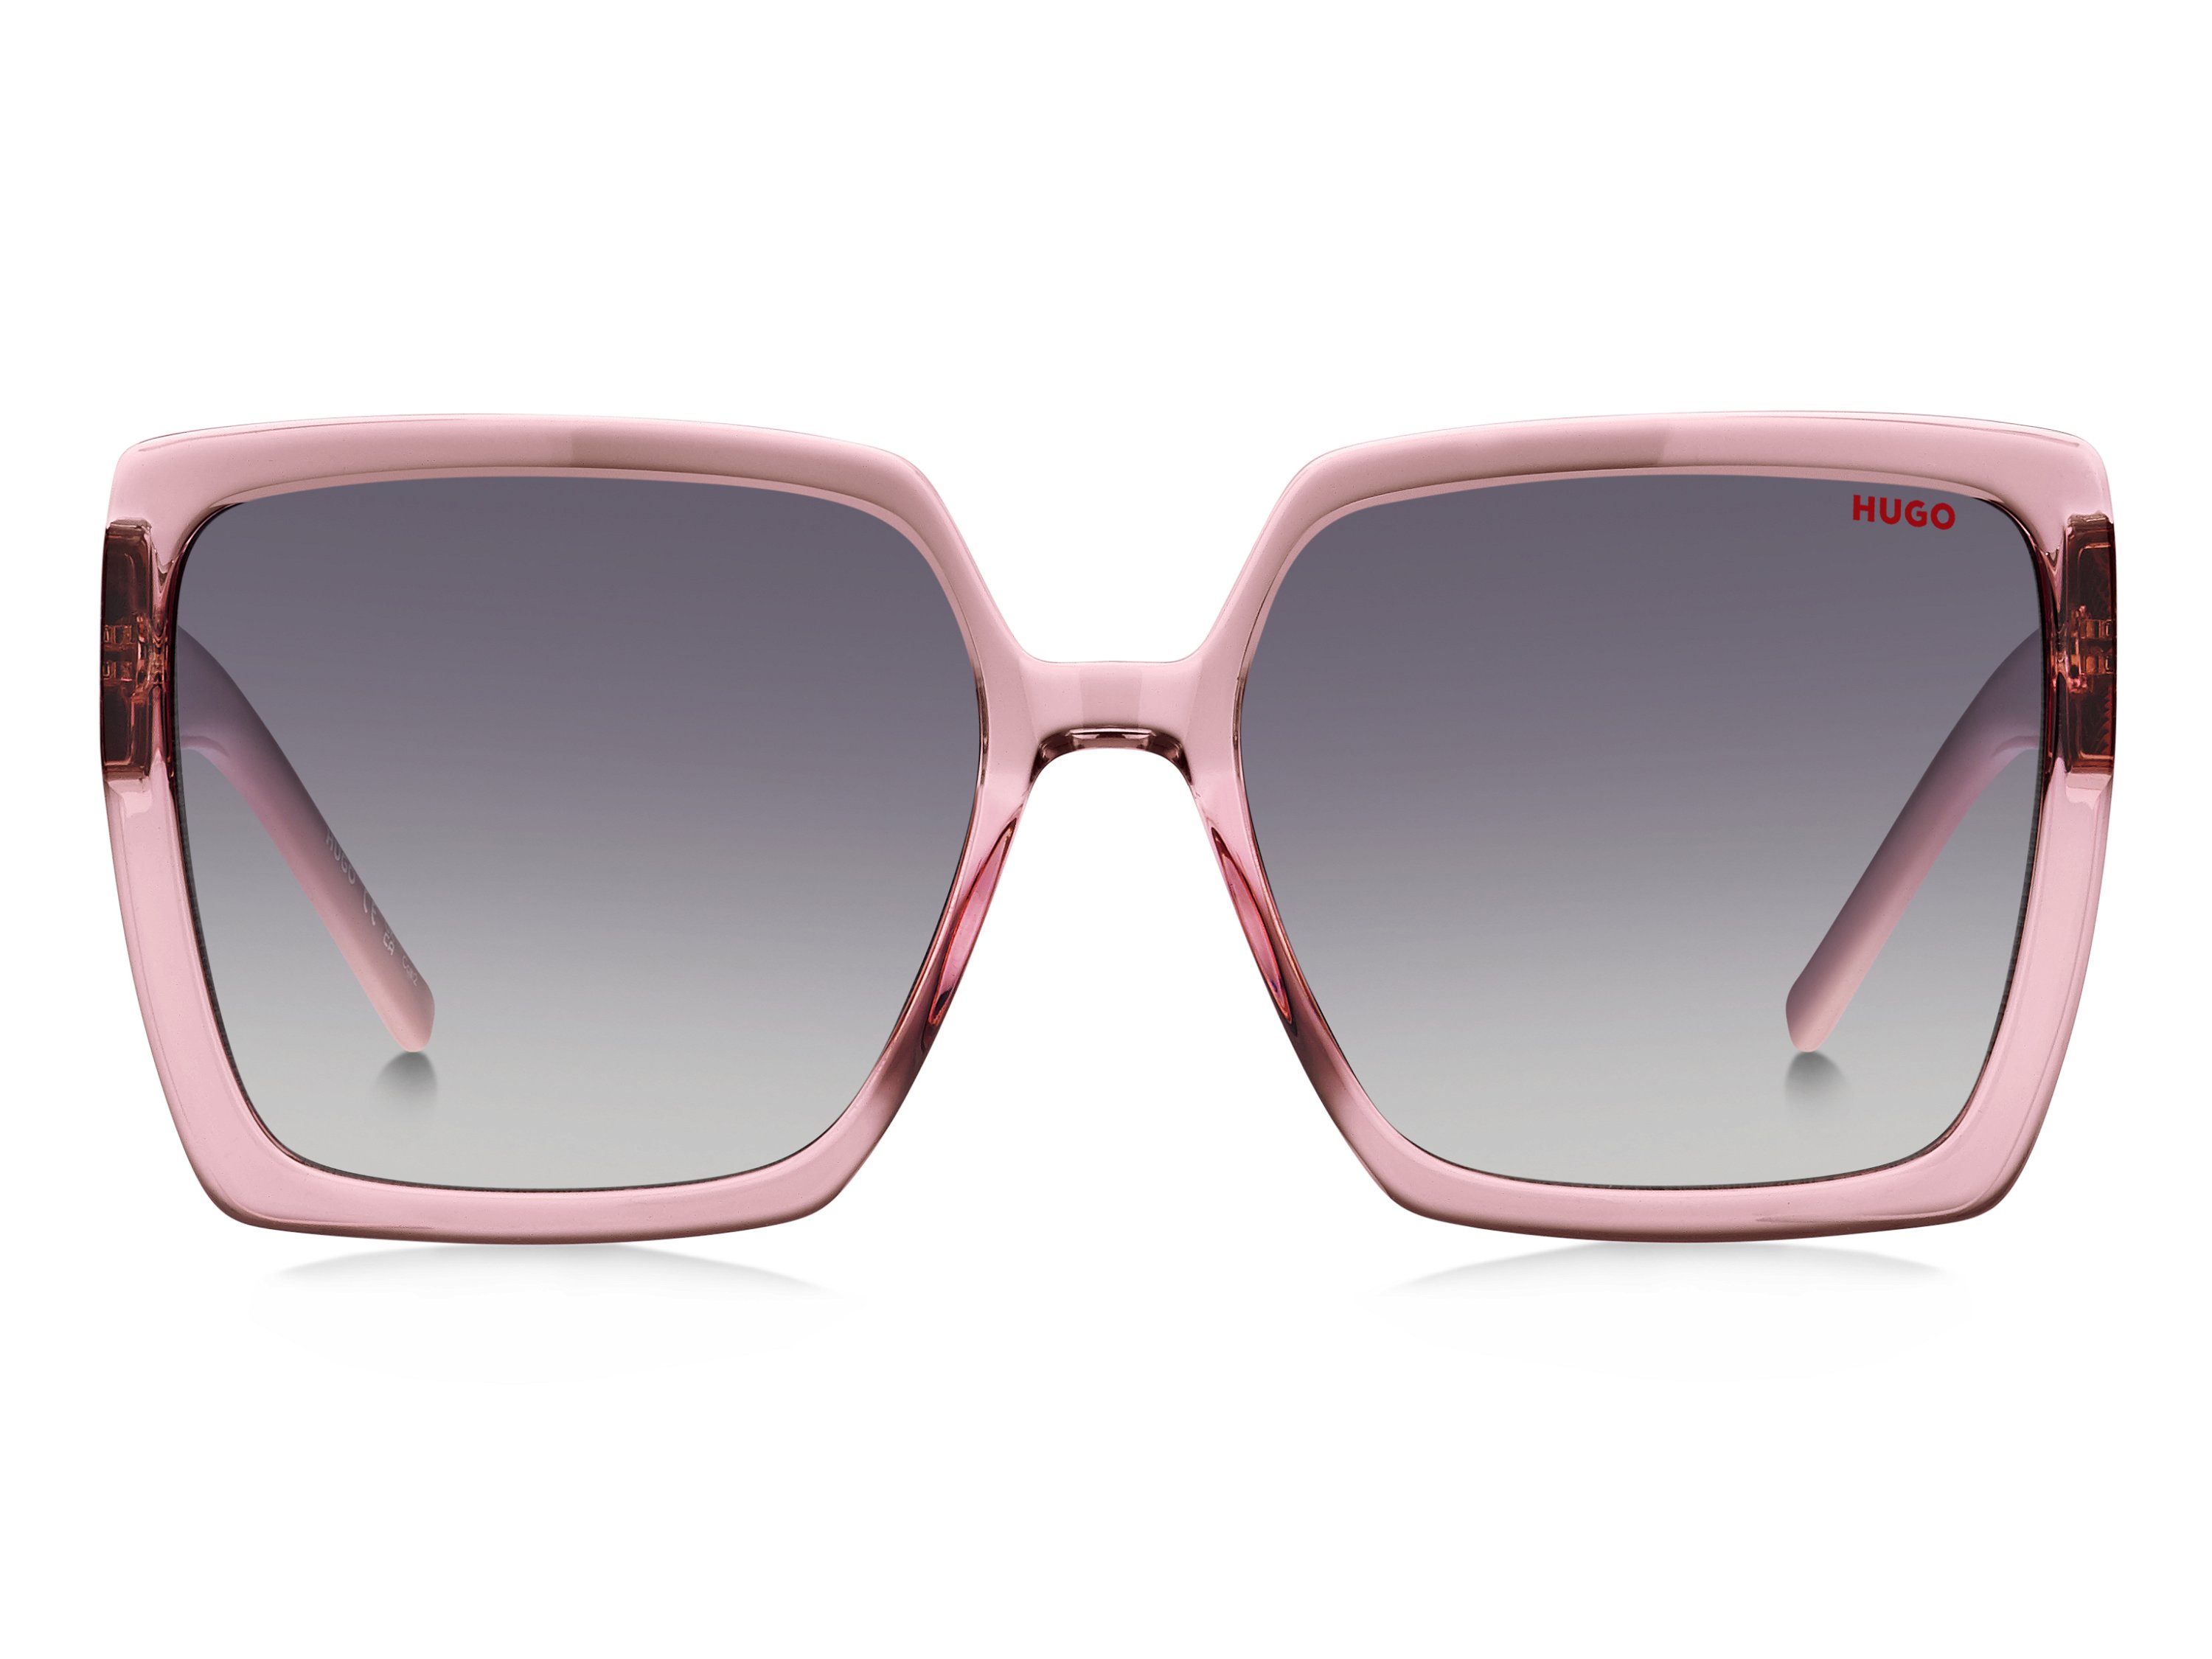 Das Bild zeigt die Sonnenbrille HG1285/S 35J von der Marke Hugo in rosa.